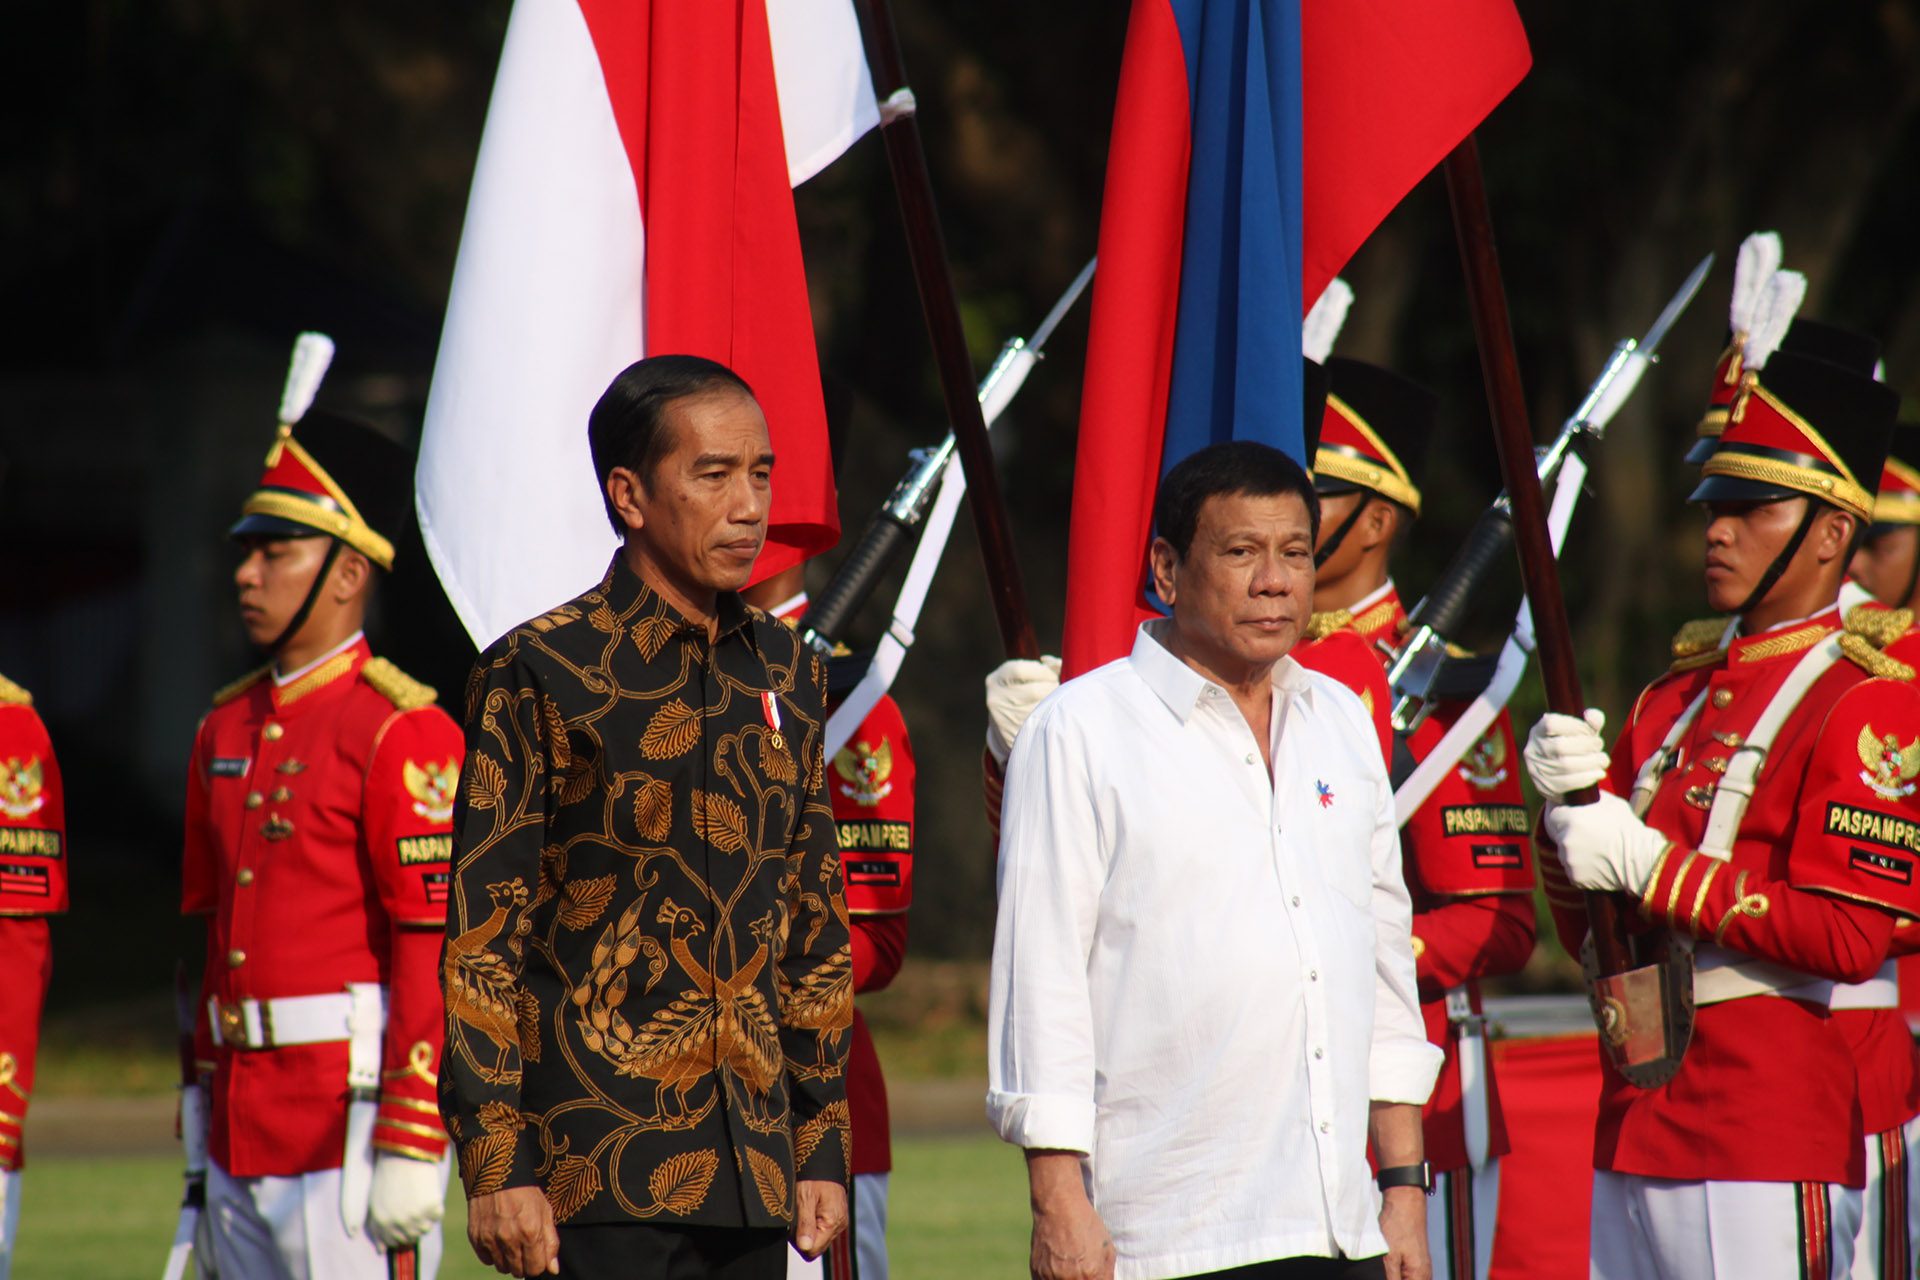 Jokowi: I like President Duterte